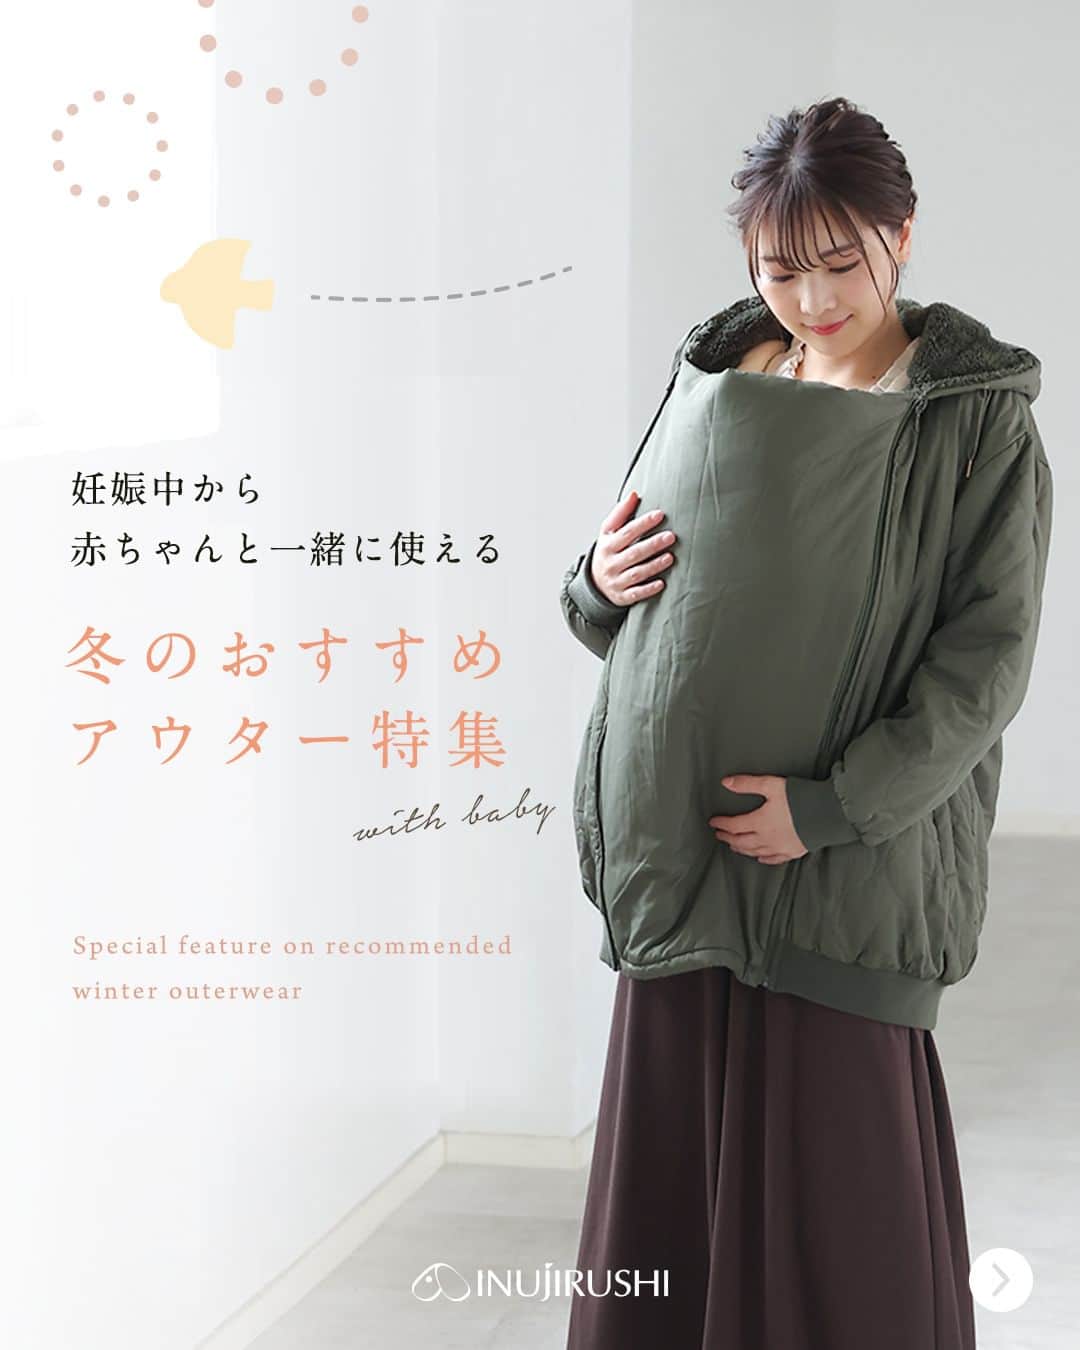 犬印本舗【公式】のインスタグラム：「@inujirushi.official ←プレママ・産後ママ向けお役立ち情報をチェック🐕  今年のアウターはもう揃えましたか？  妊娠中の方だけでなく 赤ちゃんを抱っこするママにとっても 便利なアイテム入荷中🛒💕  各商品の詳細は ハイライト「公式SHOP」から🔍 　 　 後から見返せるように【保存】がおすすめ🧥 　 　 アウター選びで悩んだら コメントorDMで是非お聞かせください👍  ＊ … * … ＊ … * …＊ … * … ＊ … * …＊   【犬印】は妊娠初期〜後期にかけての マタニティウェアトップブランドメーカー👑 妊娠中に役立つ情報と商品で 安産をサポートします☘ ぜひフォローしてチェックしてくださいね♪  ＊ … * … ＊ … * …＊ … * … ＊ … * …＊   ● 当アカウントでご紹介 ● #妊娠したら犬印 　 @inujirushi.official タグ付けで商品のご感想をお聞かせください✨ 紹介させていただくことがあります！  #犬印 #犬印本舗 #初マタニティ #マタニティライフ #プレママライフ #出産準備 #マタニティコーデ #マタニティ服 #ベビーケープ」